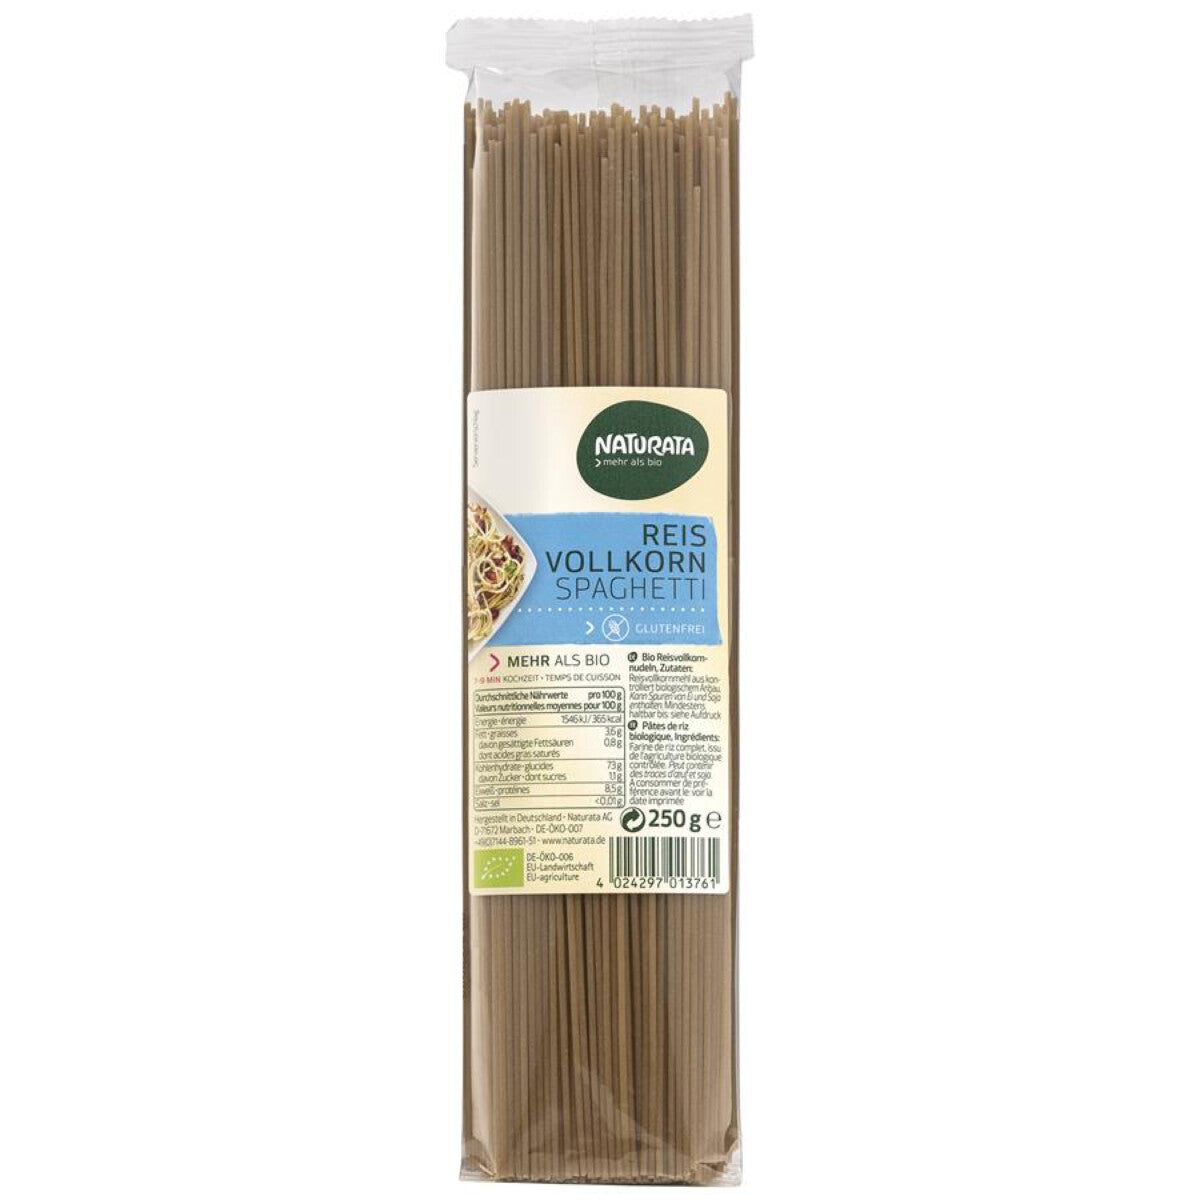 NATURATA Reis Vollkorn Spaghetti - 250 g